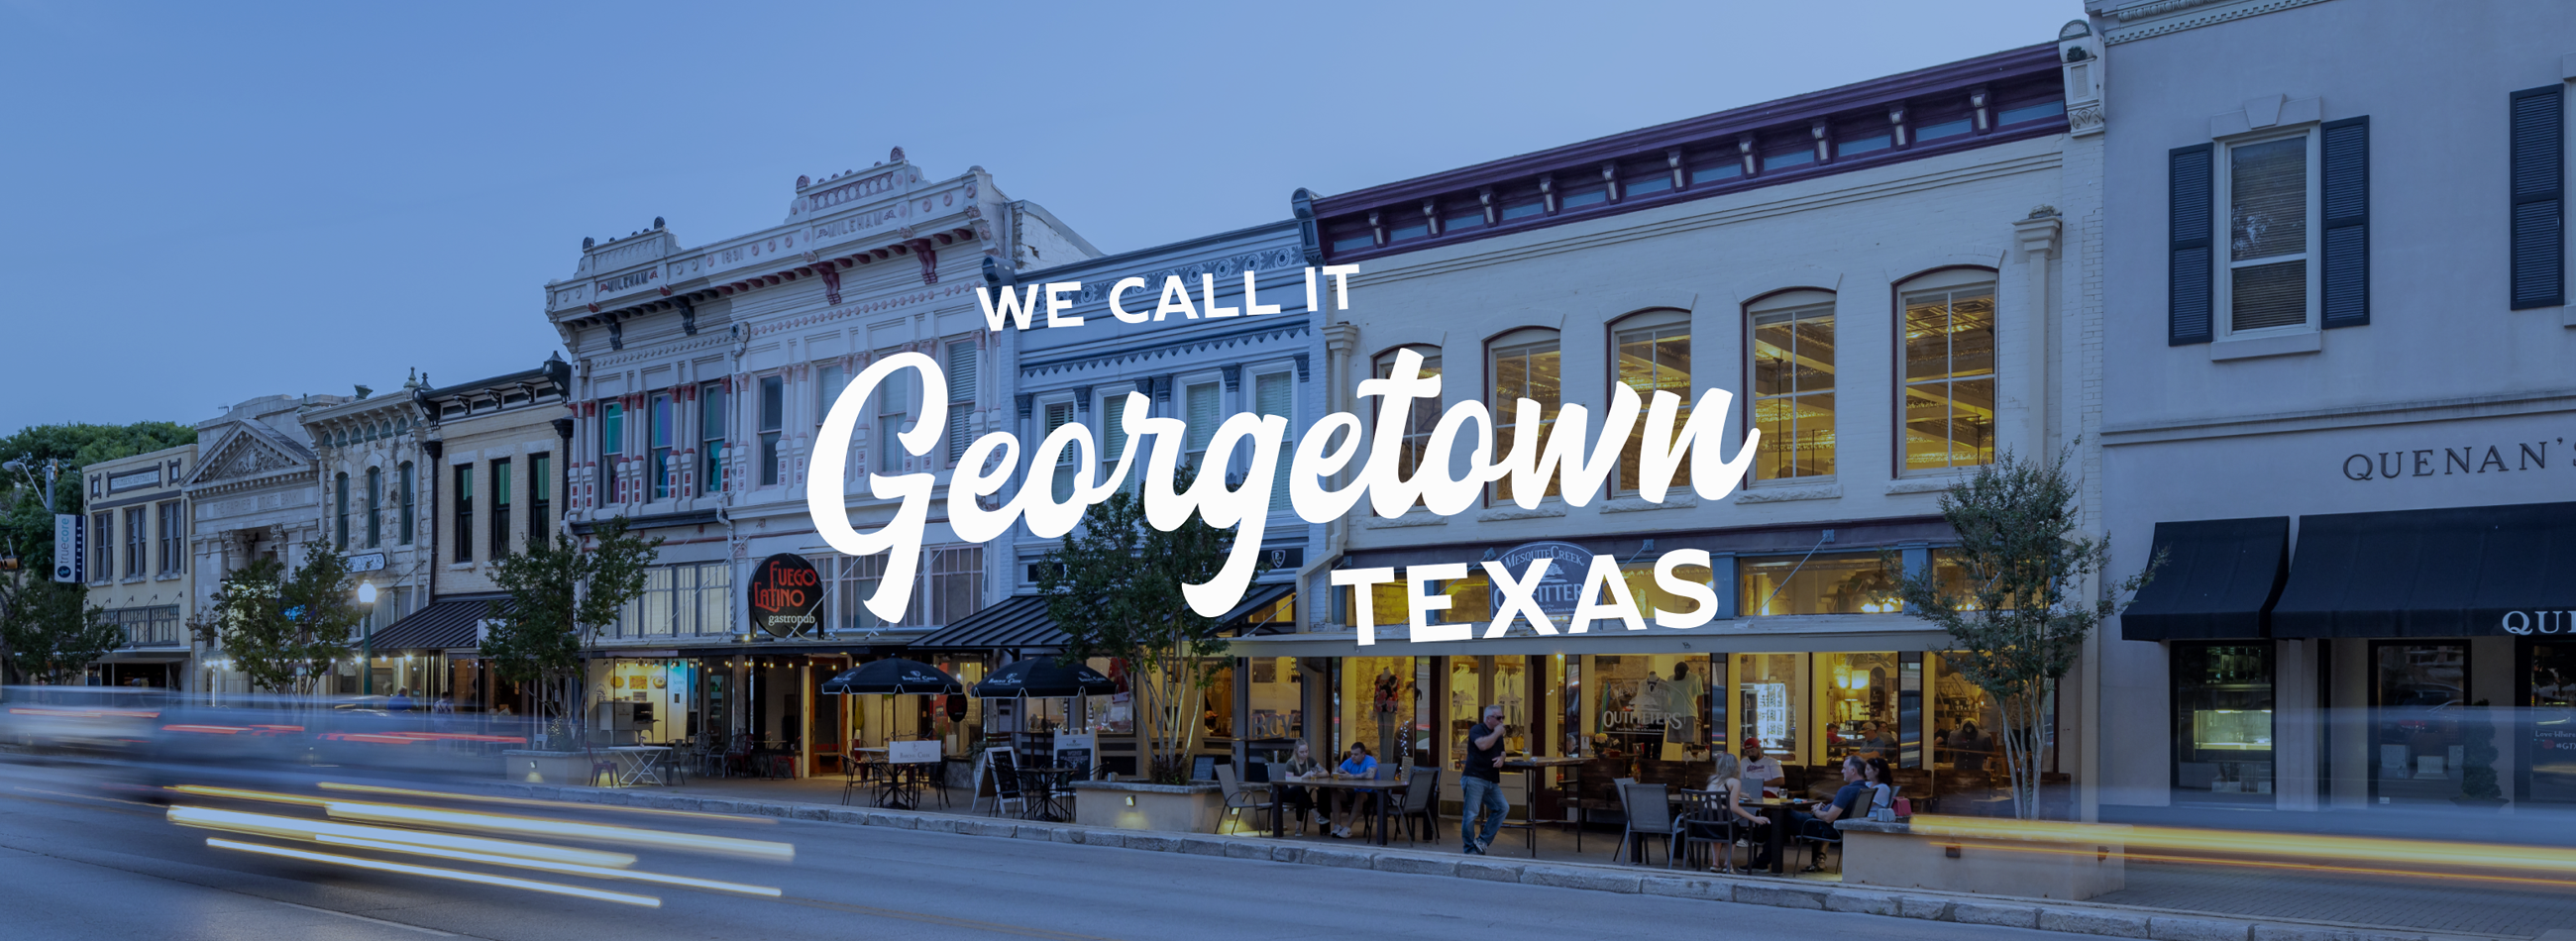 Visit Georgetown